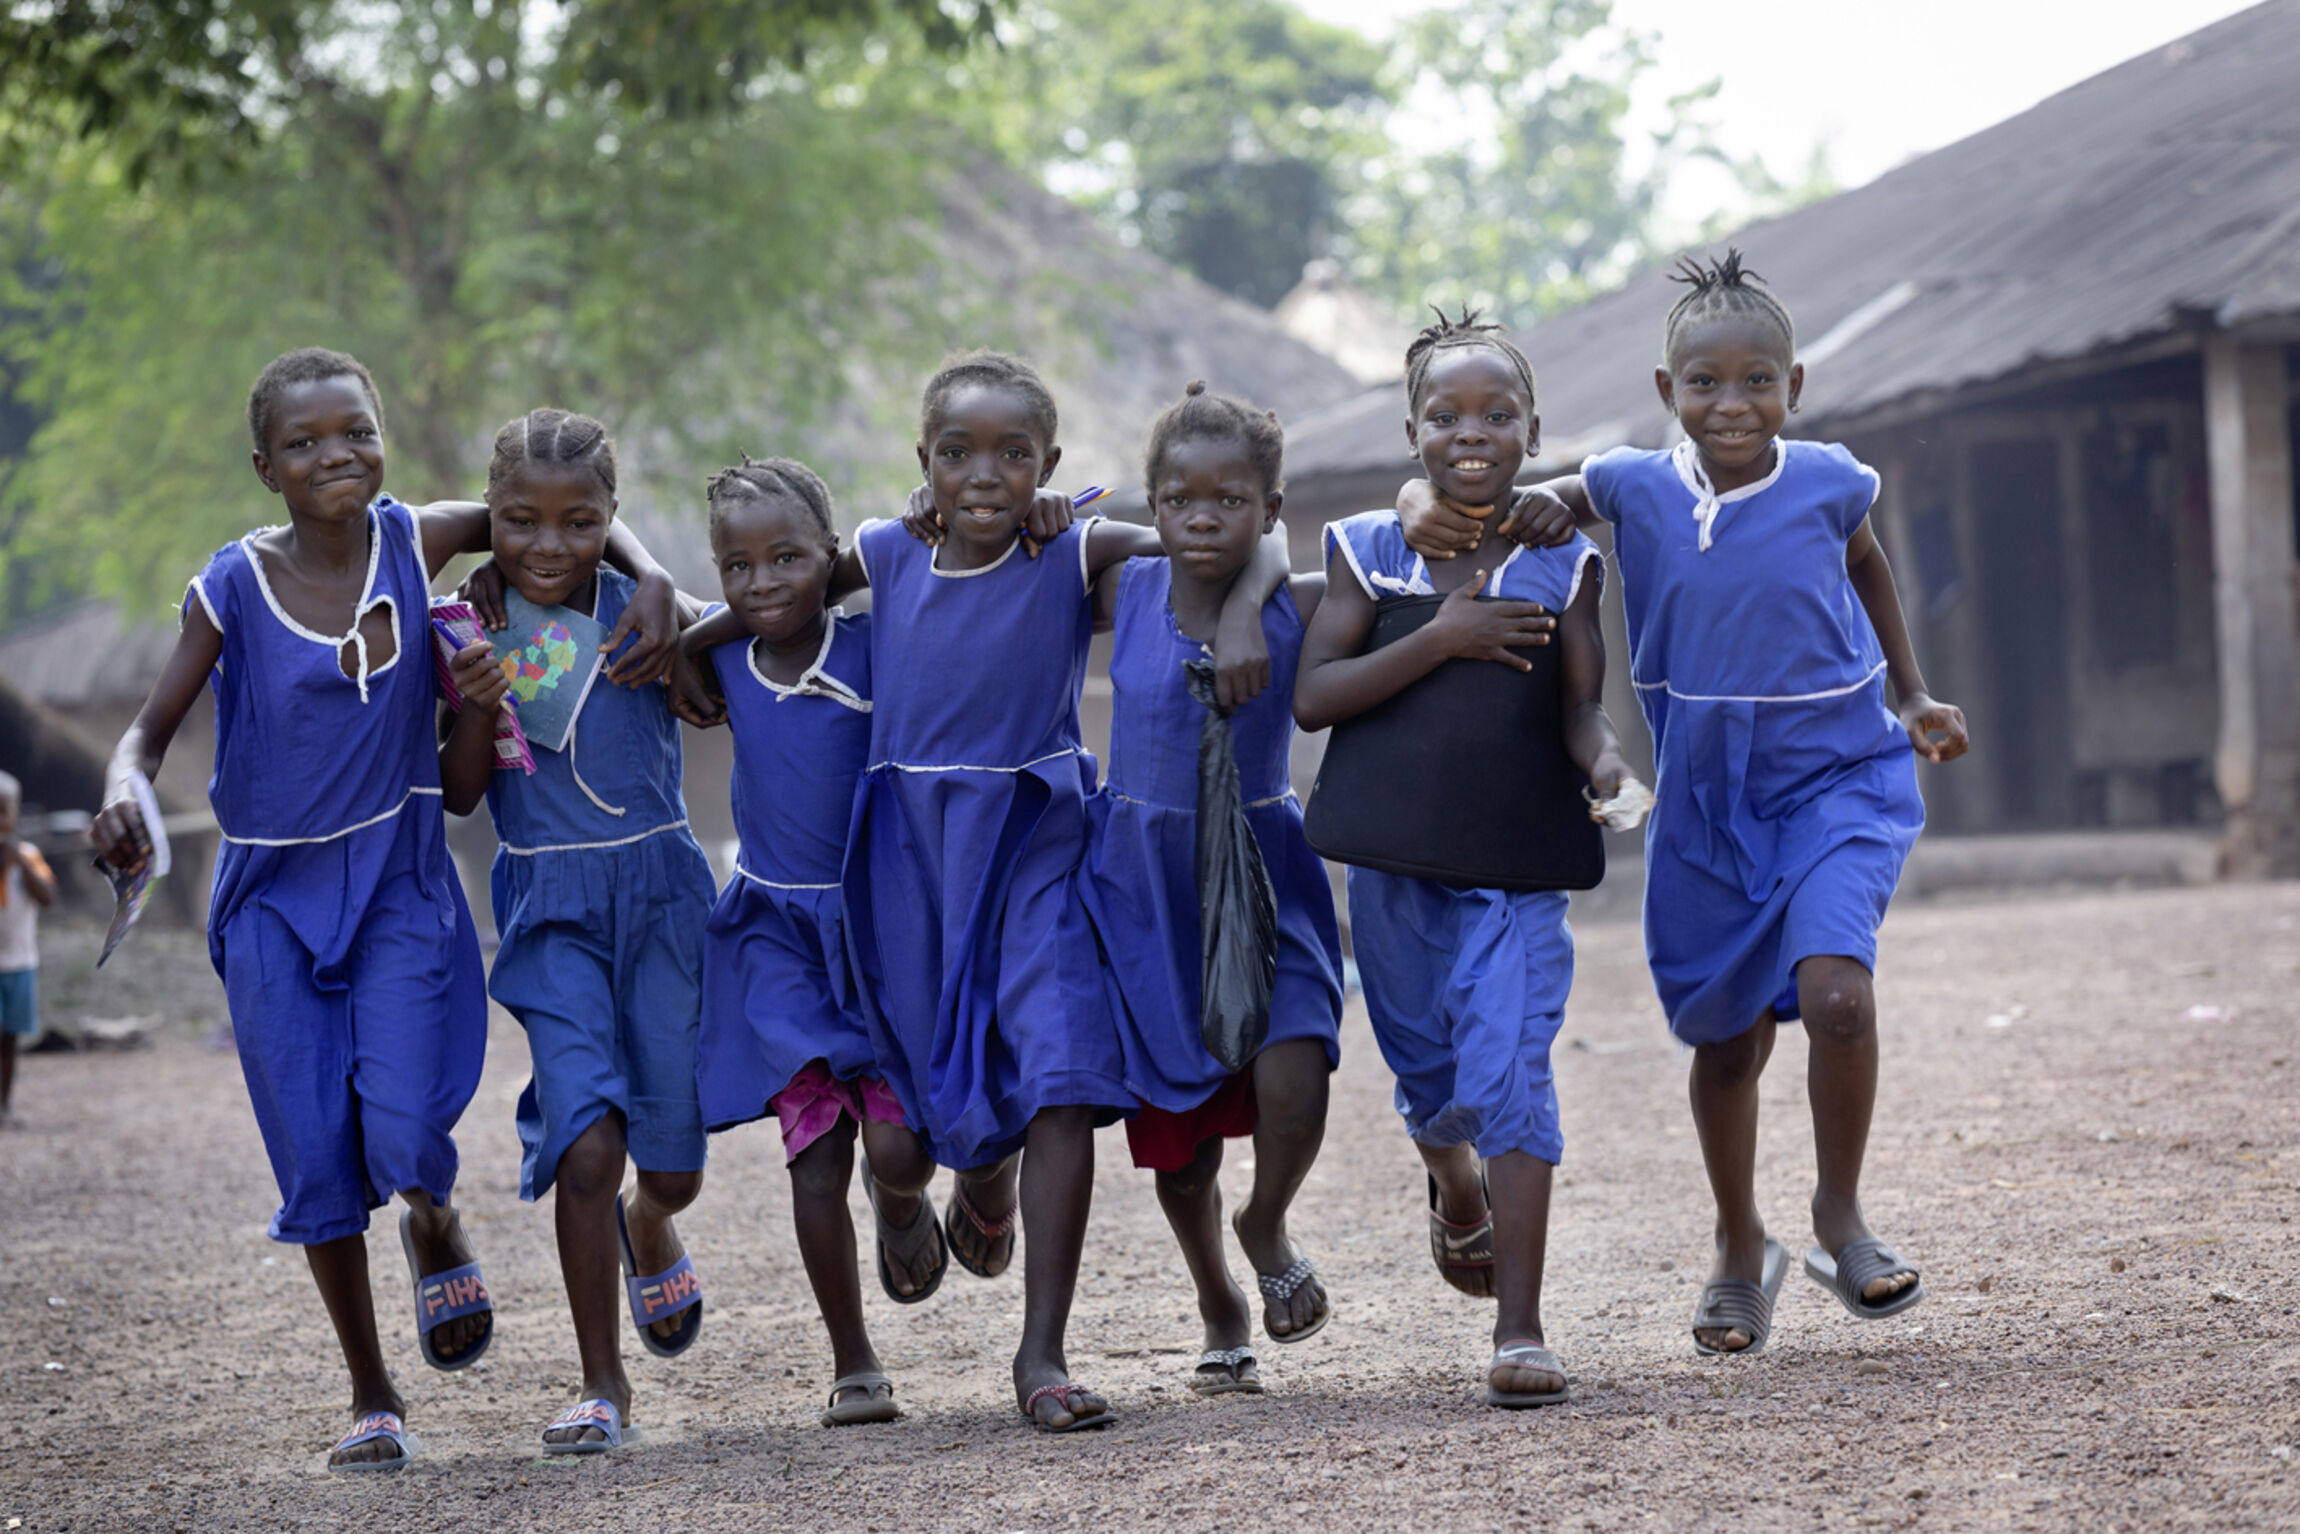 Schule statt Kinderarbeit: Von der Händlerin zum Schulkind - Mbalus Traum